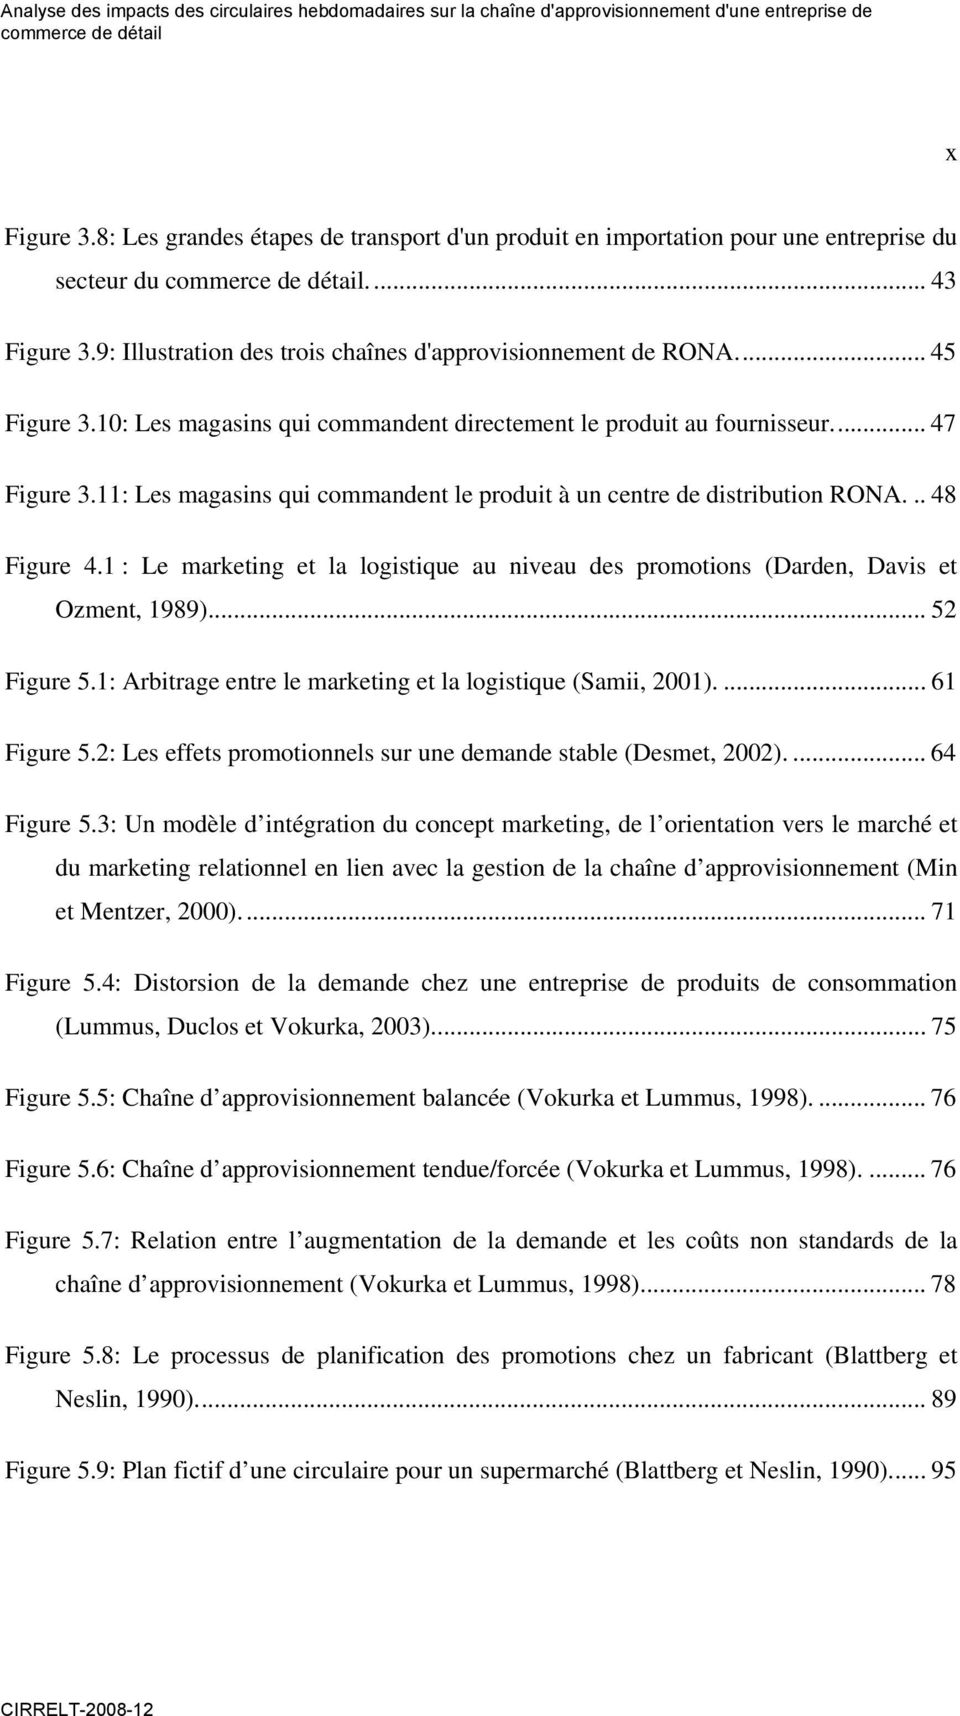 1 : Le marketing et la logistique au niveau des promotions (Darden, Davis et Ozment, 1989)... 52 Figure 5.1: Arbitrage entre le marketing et la logistique (Samii, 2001).... 61 Figure 5.